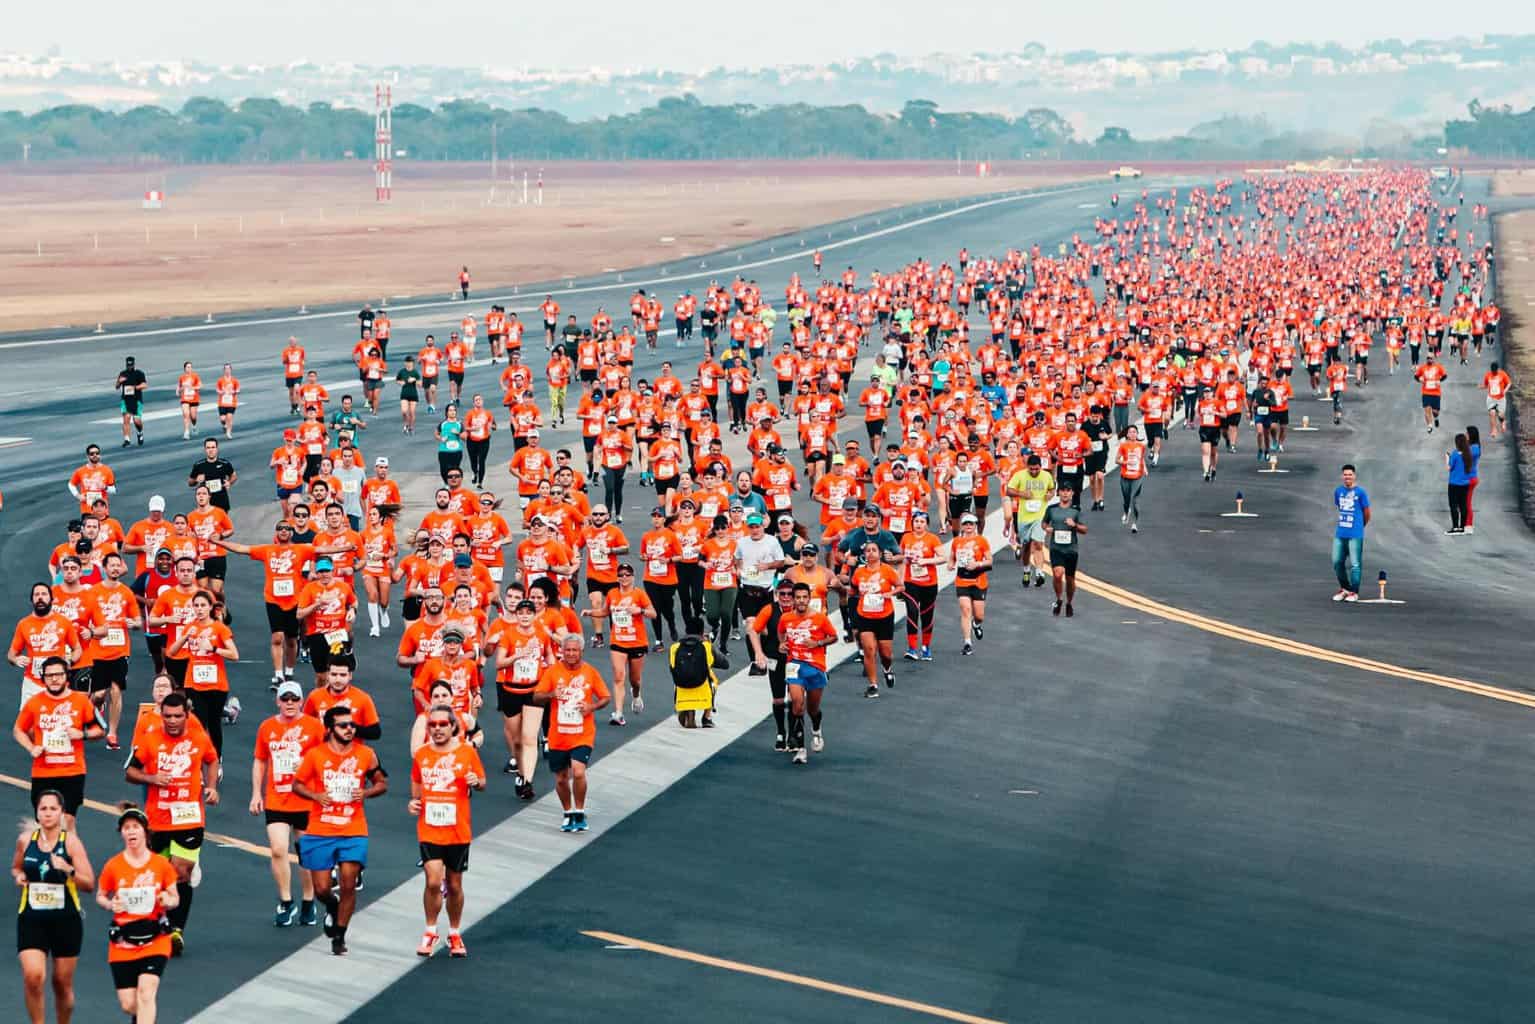 O Aeroporto de Brasília está com inscrições abertas para a corrida de rua Flight Run que será em uma de suas pistas